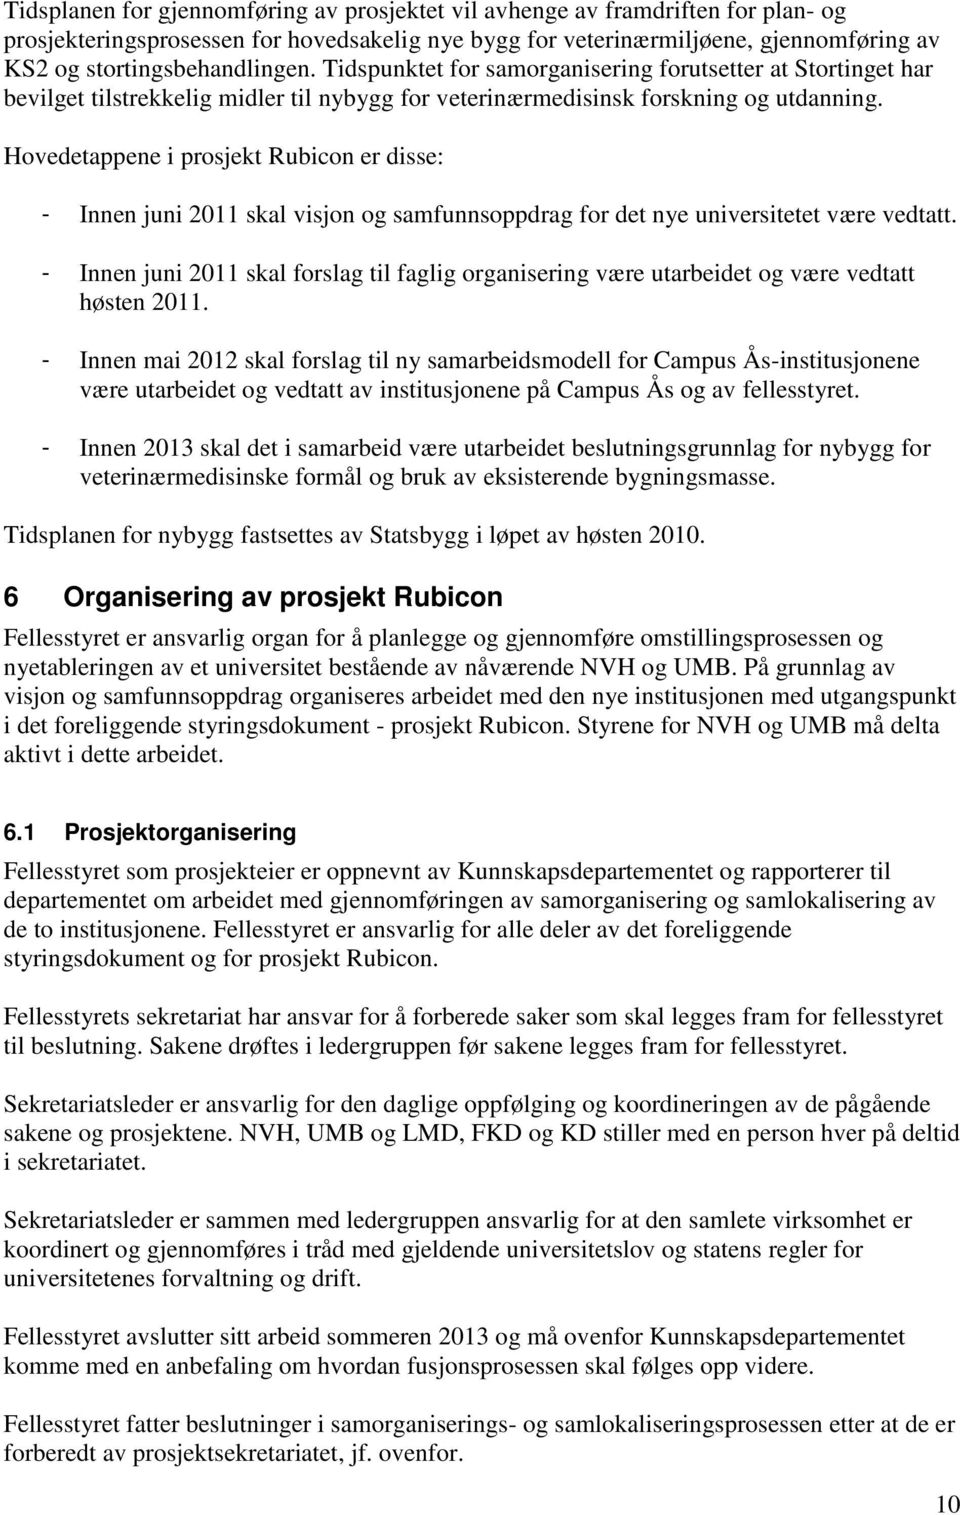 Hovedetappene i prosjekt Rubicon er disse: - Innen juni 2011 skal visjon og samfunnsoppdrag for det nye universitetet være vedtatt.